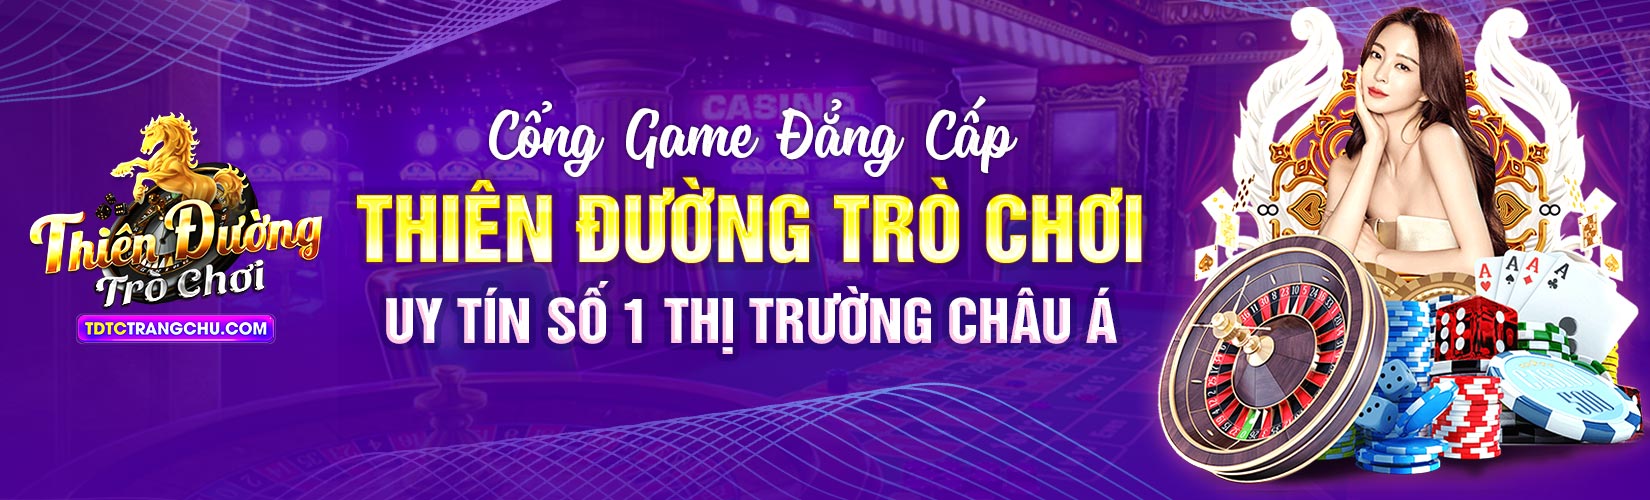 Trang chu Thien duong tro choi